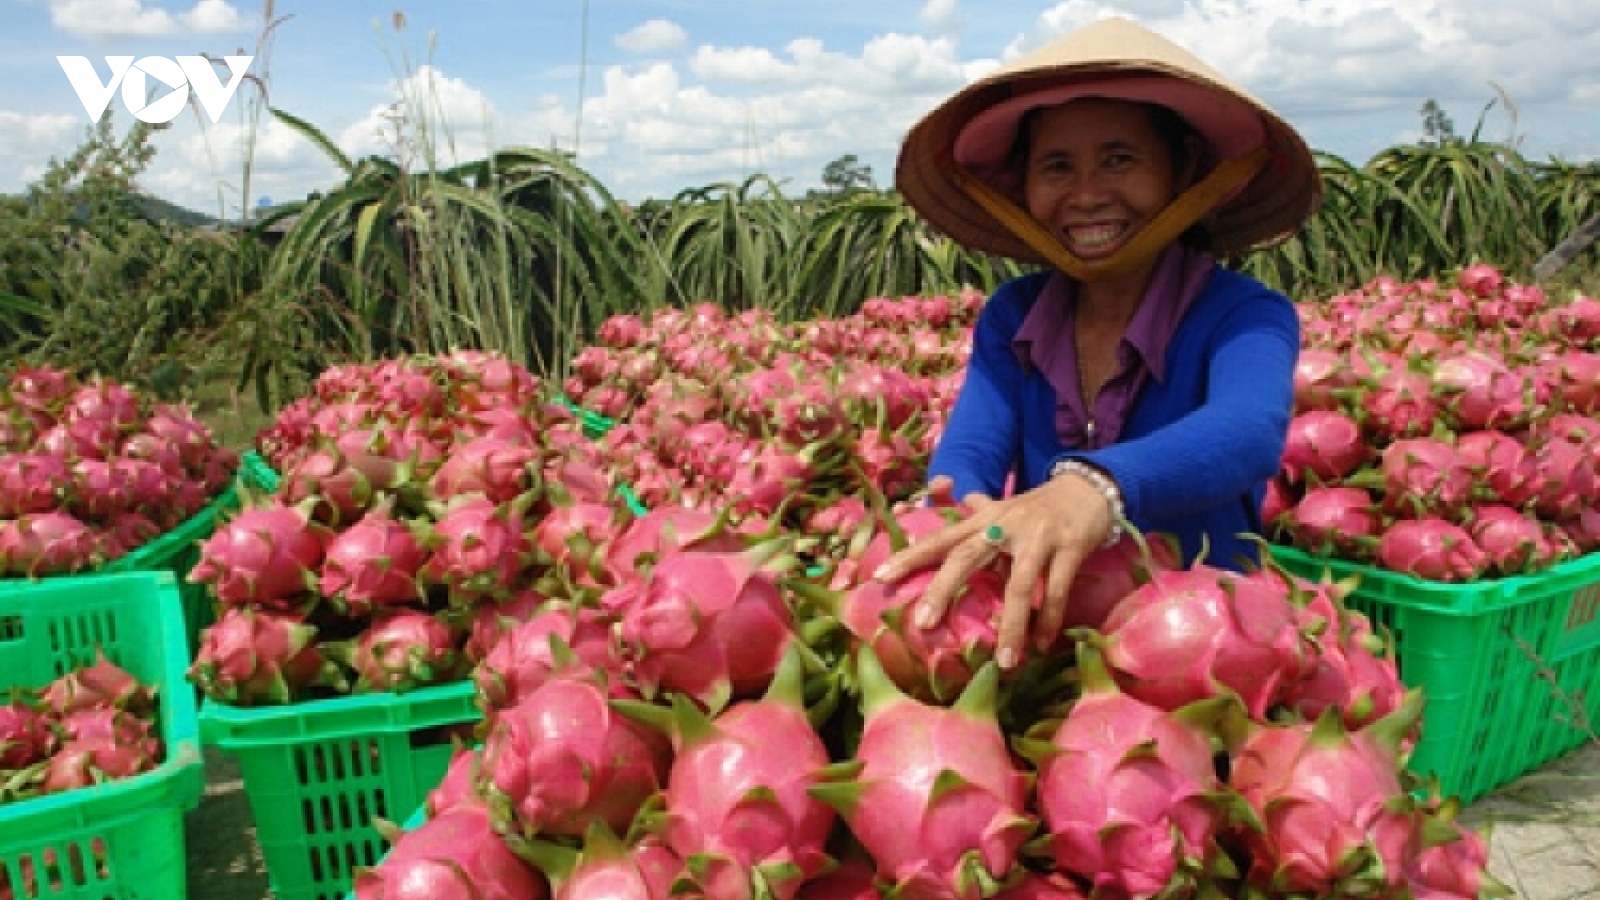 Siêu thực phẩm ở châu Âu giá đắt đỏ, ở Việt Nam giá rẻ như cho